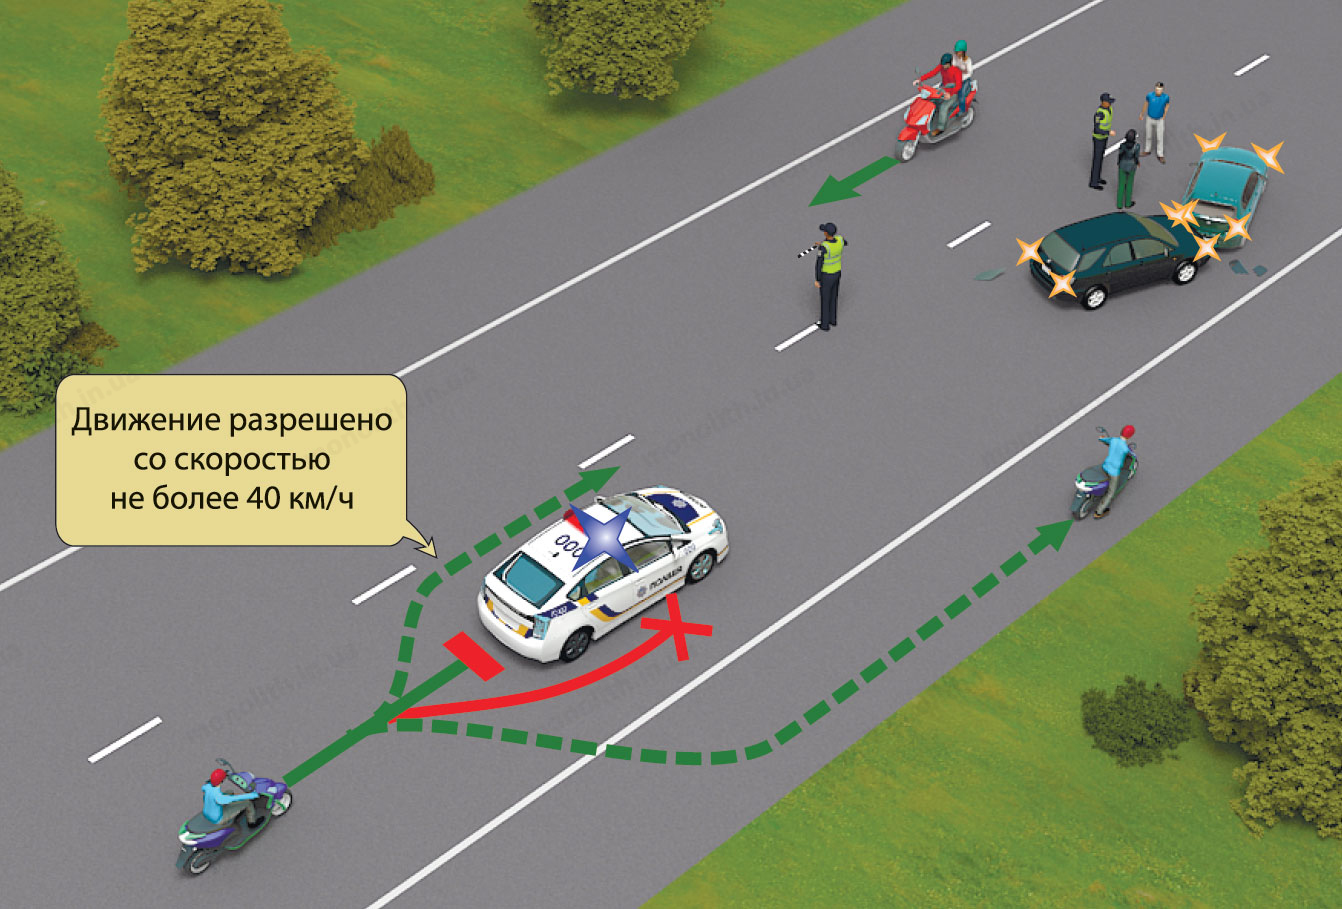 ПДД: действия при приближении к транспортному средству с включенным проблесковым маячком